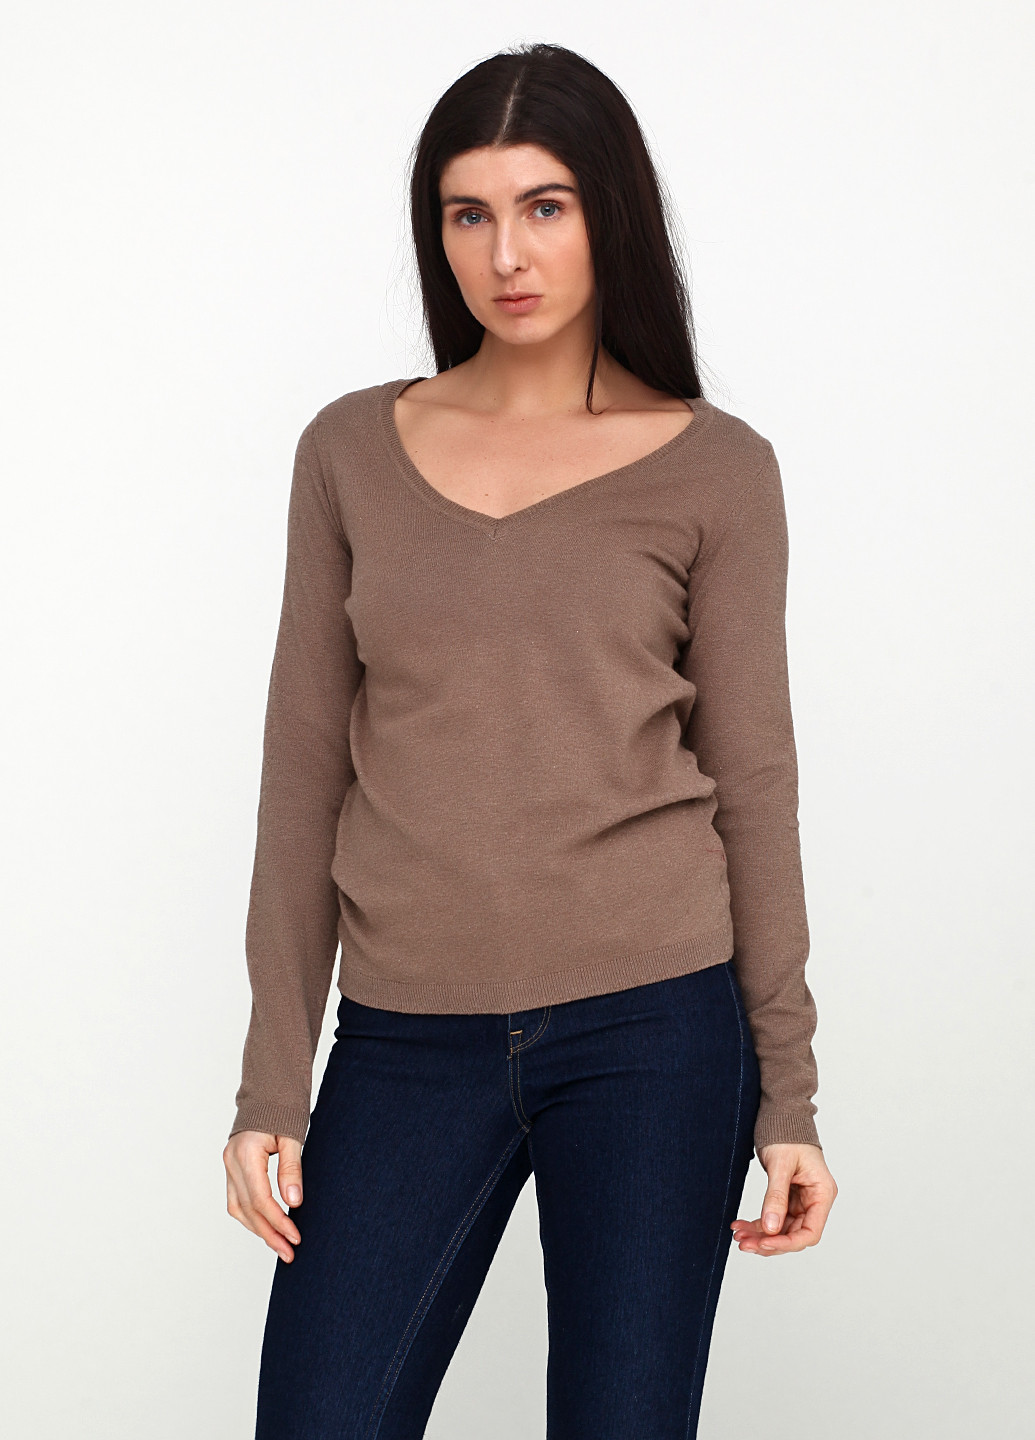 Темно-коричневый демисезонный пуловер пуловер Colours